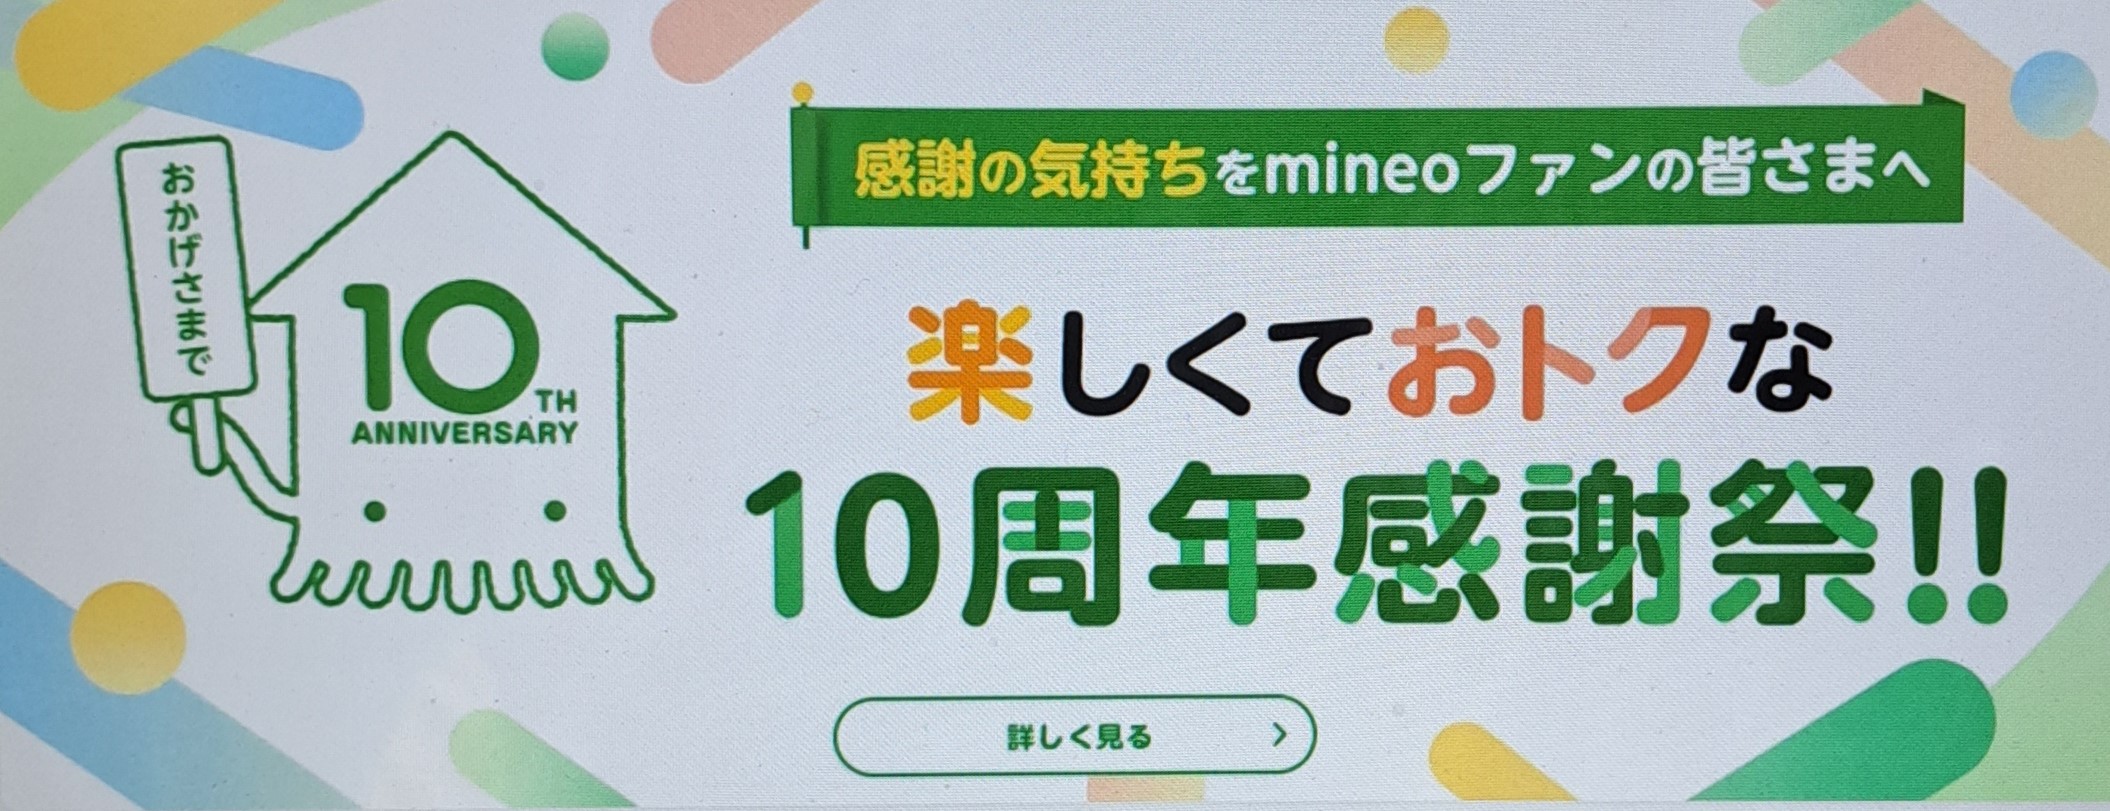 mineo_campaign1